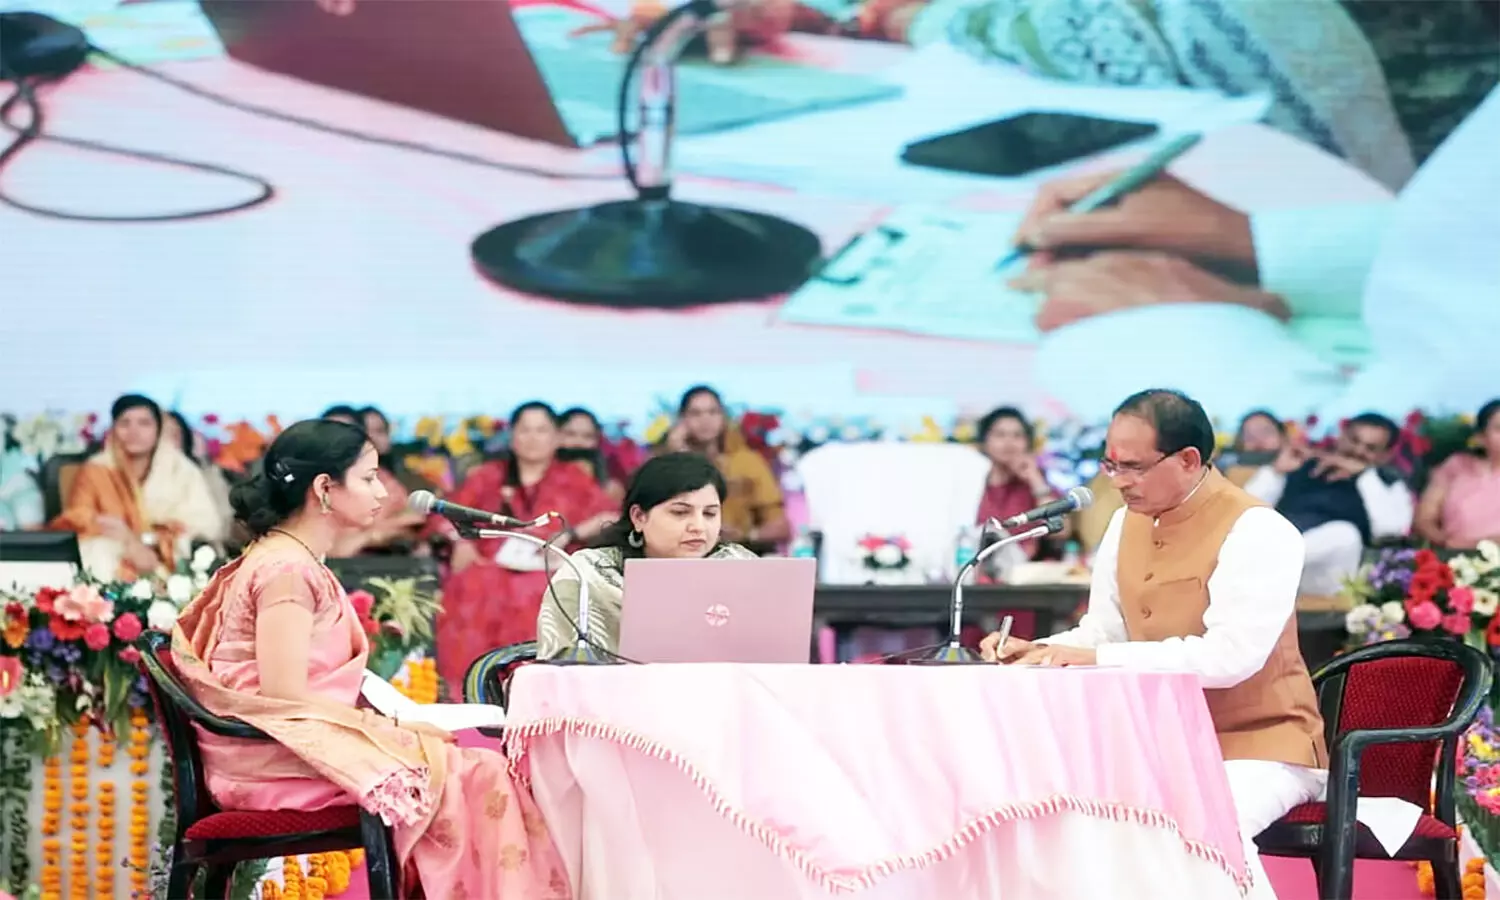 एमपी में मुख्यमंत्री लाडली बहना योजना हुई लॉन्च, सीएम बोले बहनों में मां दुर्गा, लक्ष्मी व सरस्वती दिखती हैं